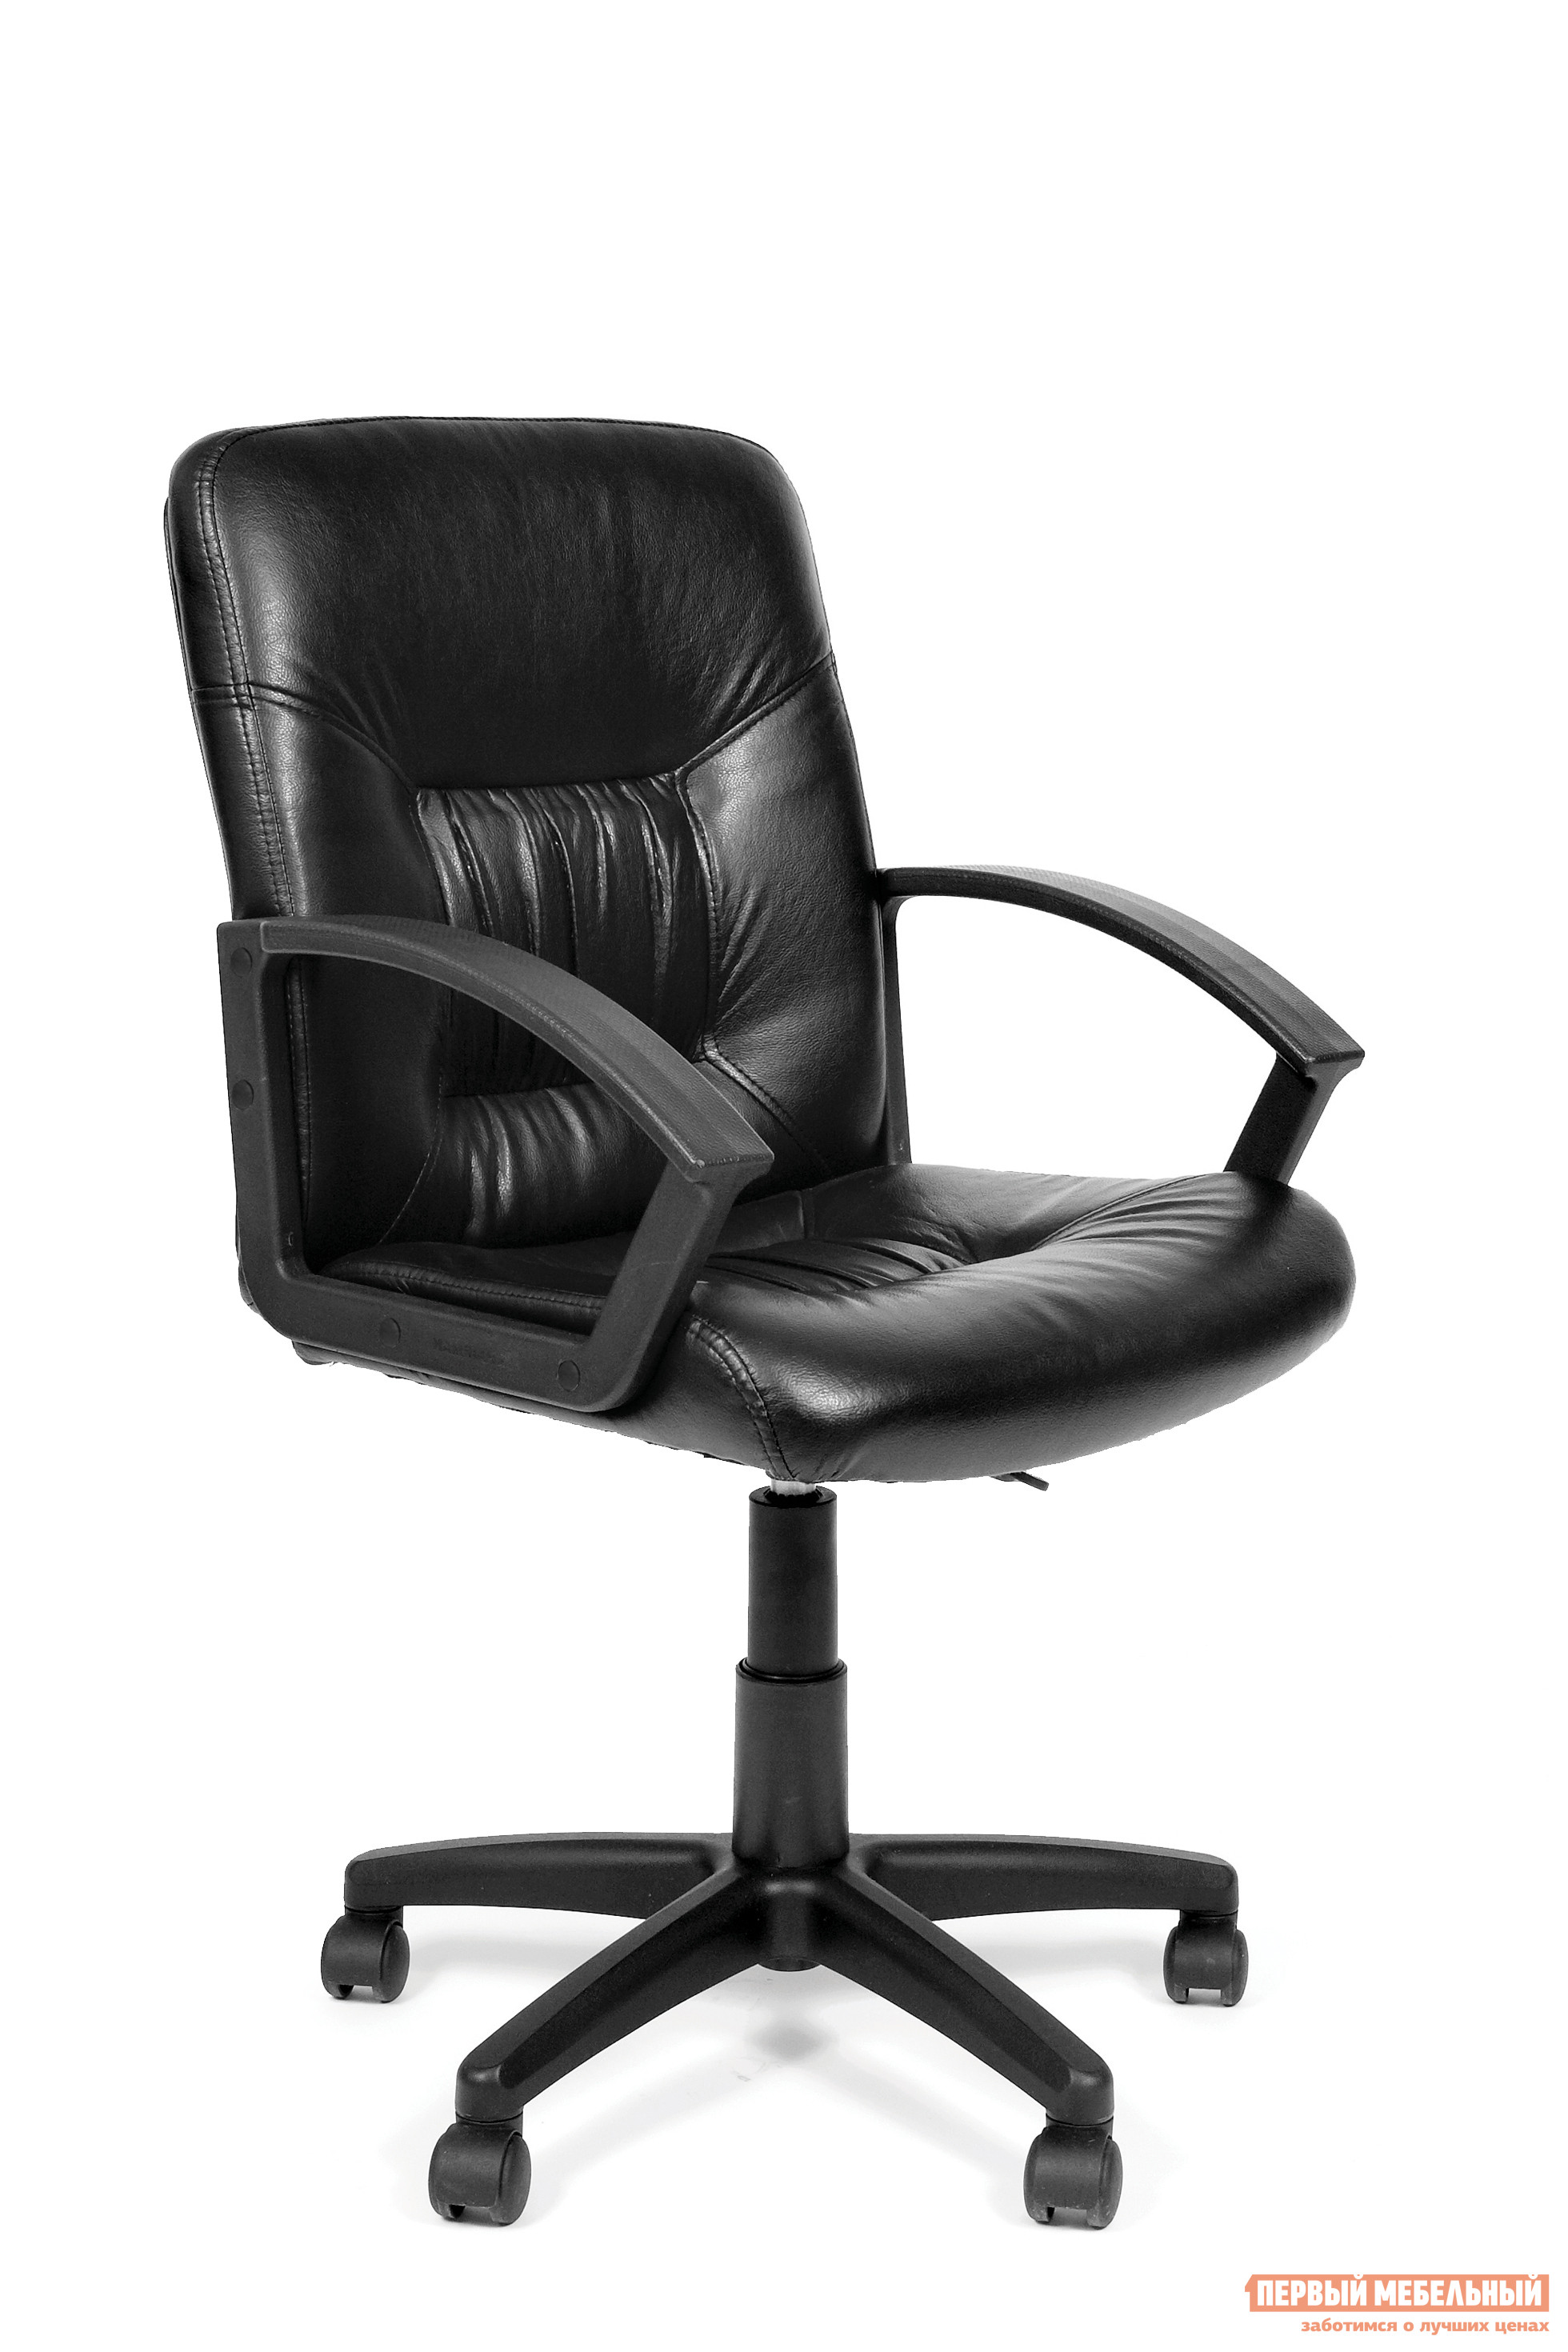 Кожаное офисное кресло Тайпит СН 651